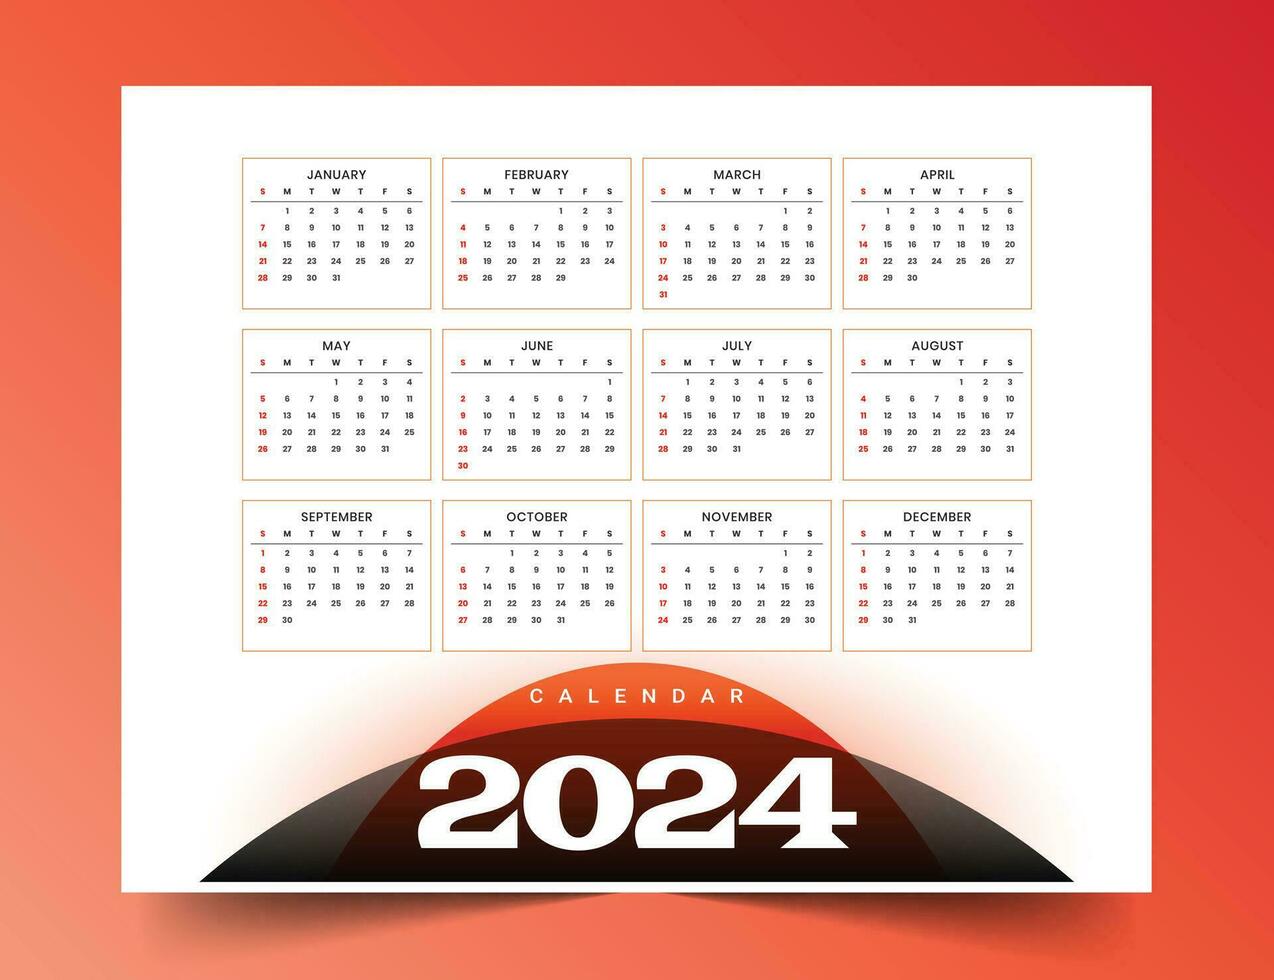 2024 nuevo año imprimible calendario modelo gestionar eventos vector